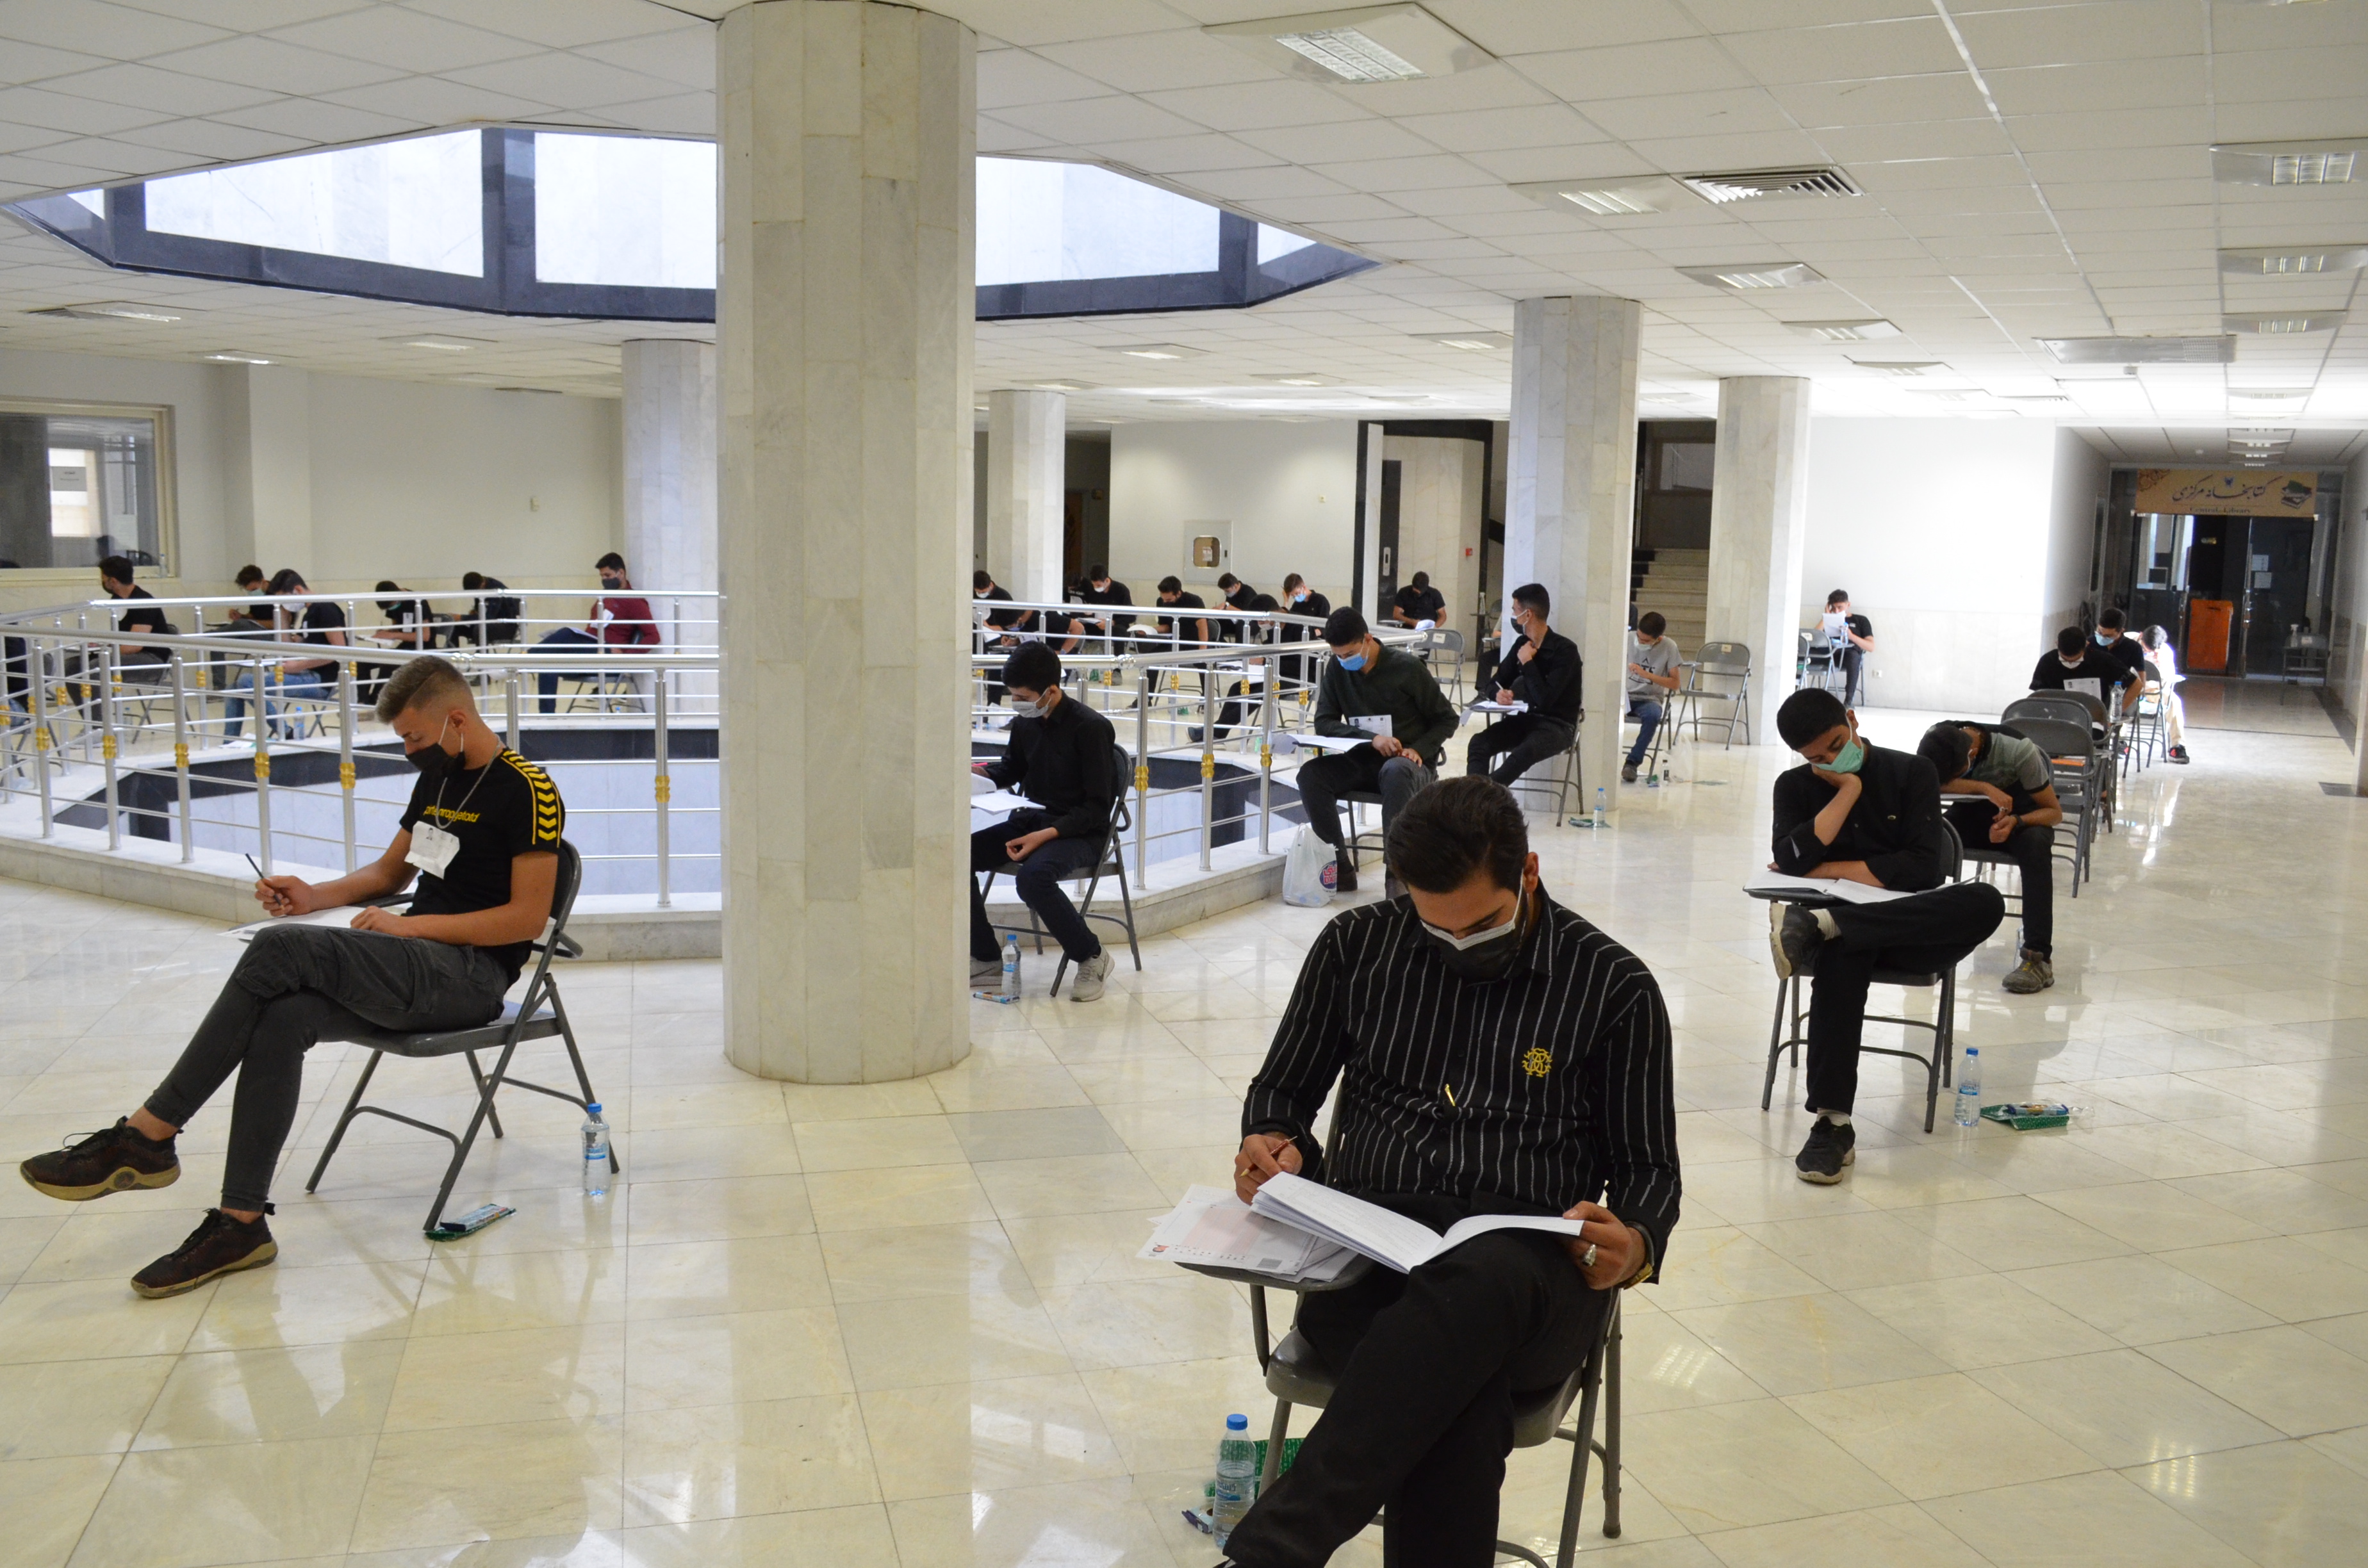 برگزاری آزمون کاردانی، کارشناسی ناپیوسته و آزمون استخدامی در واحدهای دانشگاهی